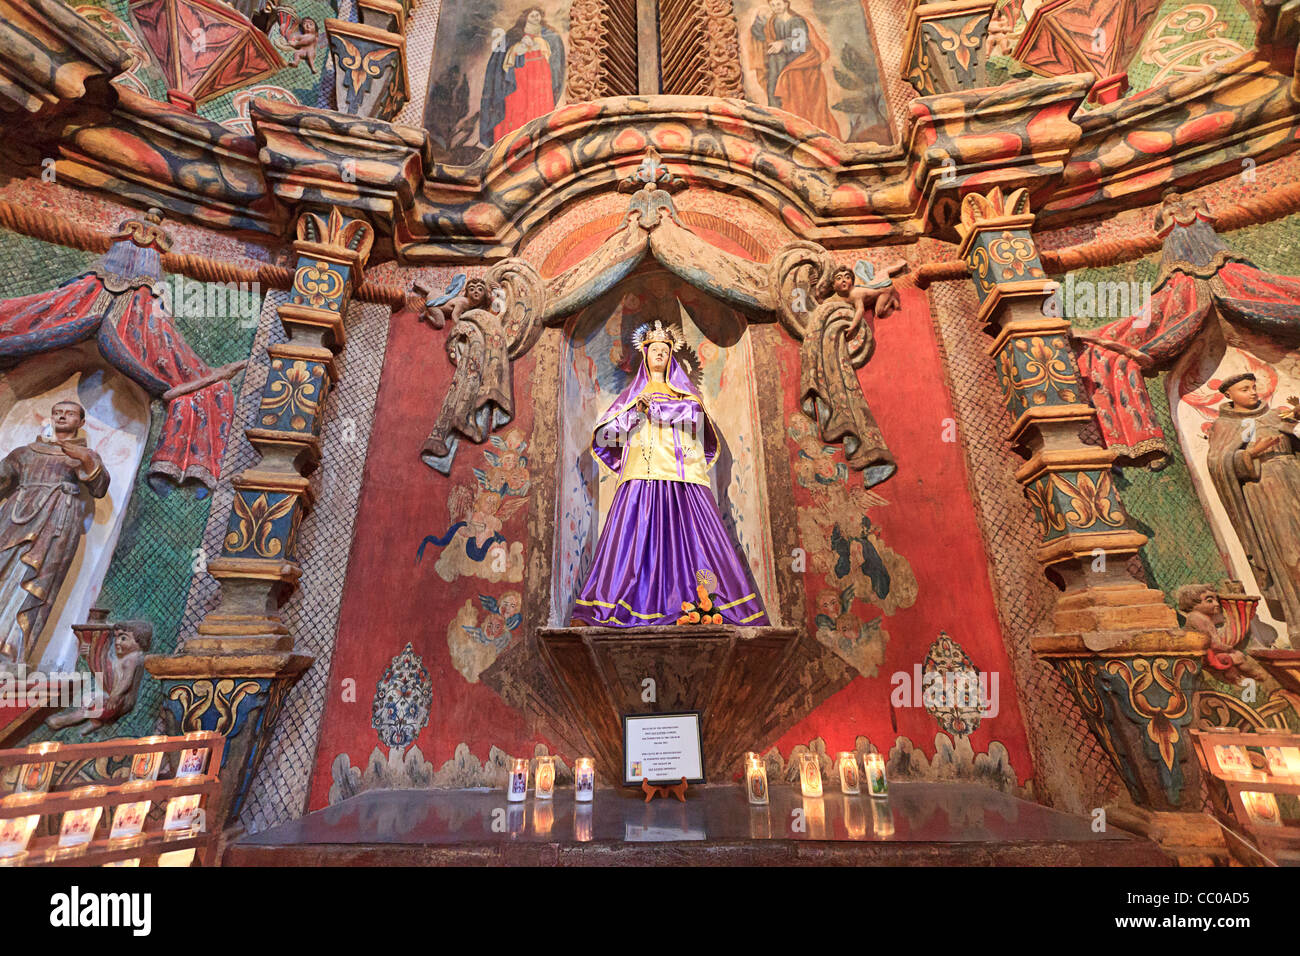 Kunstvolle innere Mission San Xavier del Bac, eine historische Spanisch, katholische, Franziskaner mission außerhalb Tucson, AZ Stockfoto